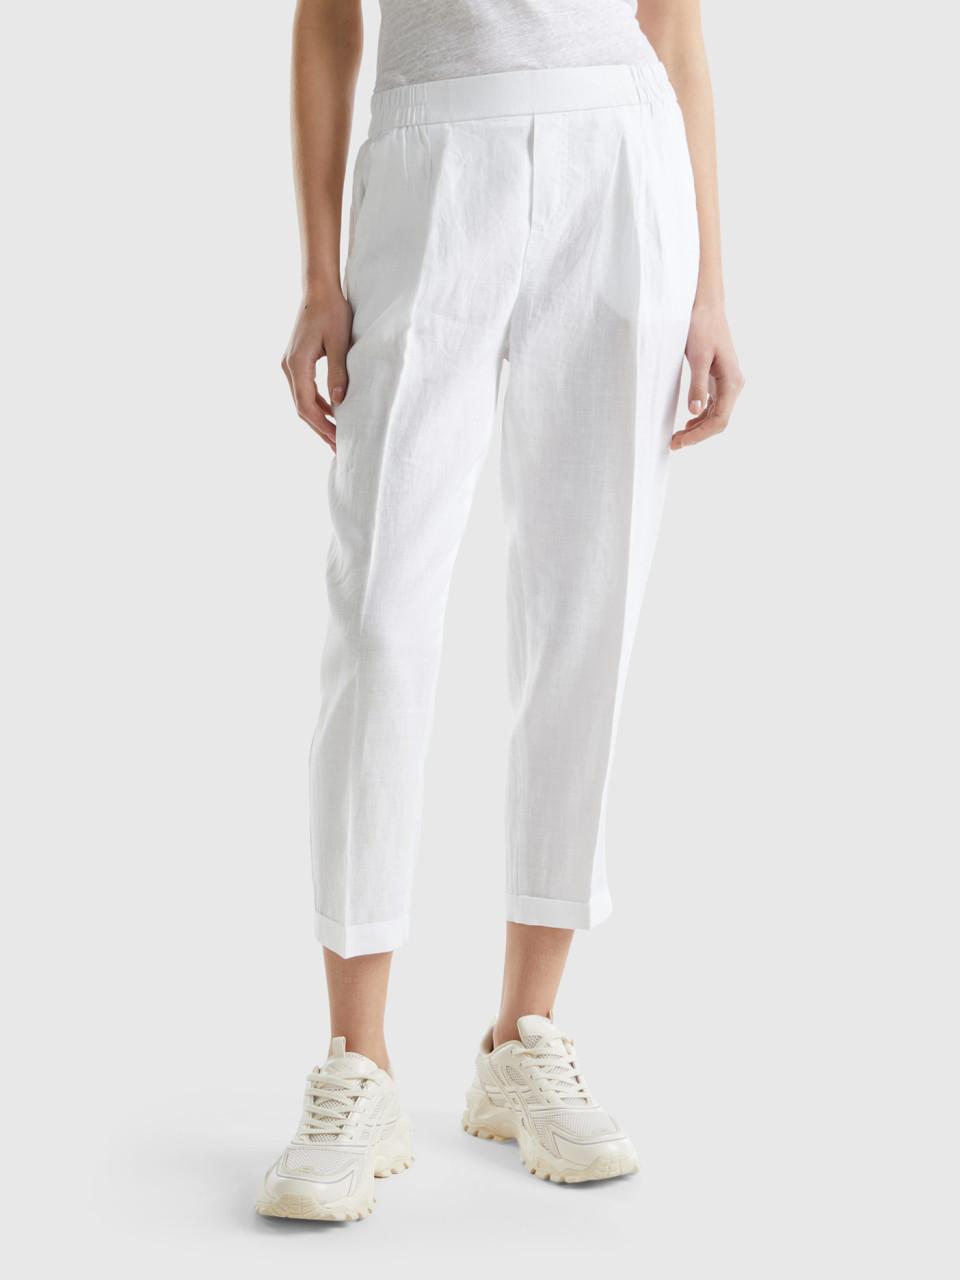 Benetton, Cropped Trousers In 100% Linen, White, Women